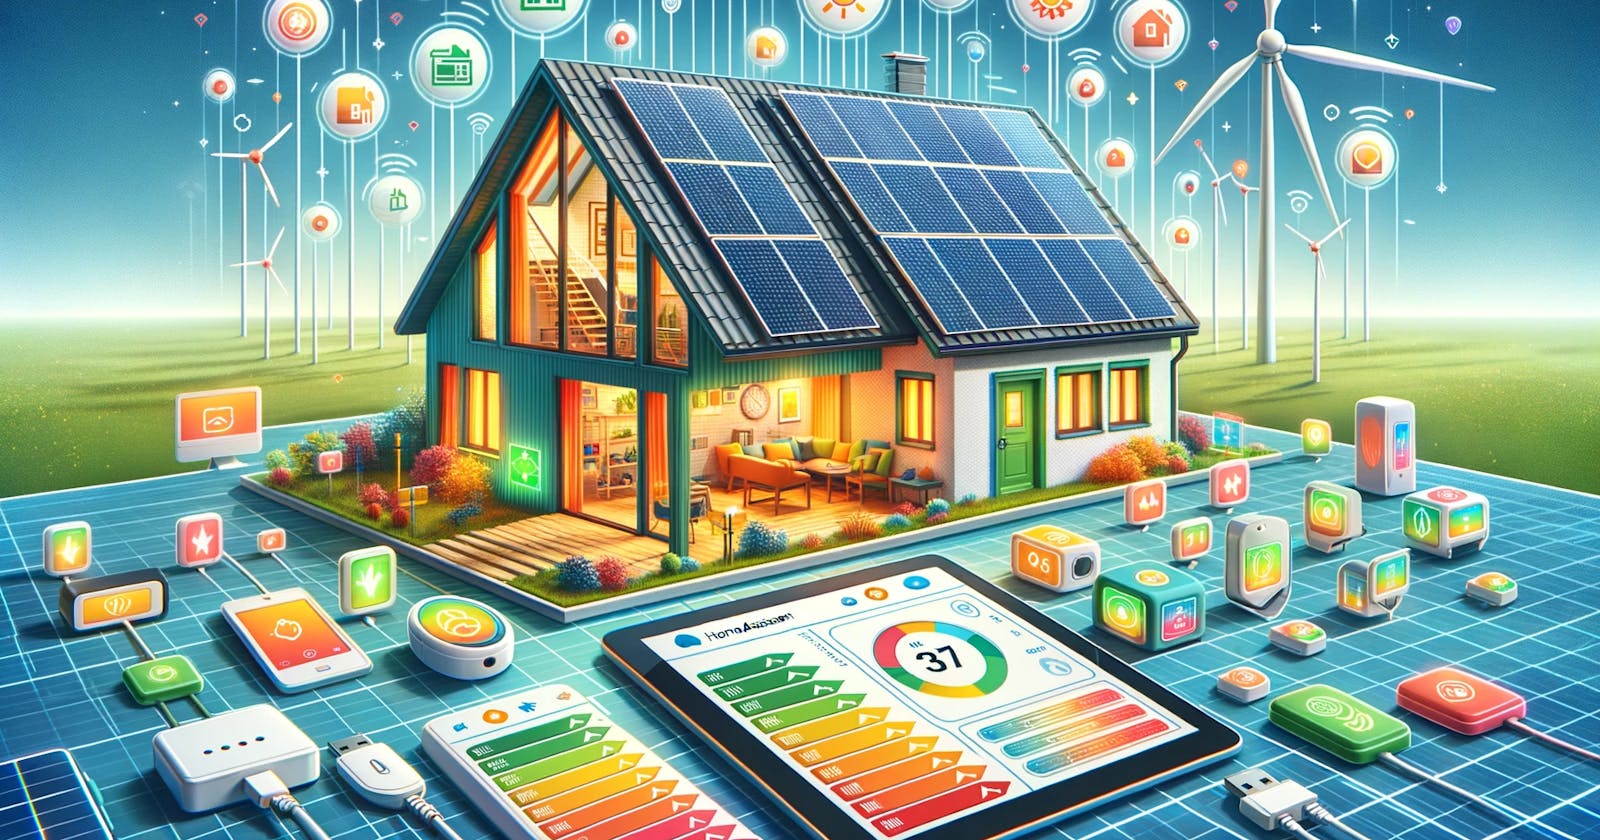 Dashboard Visualisatie in Home Assistant: Kleuren voor Energieprijzen